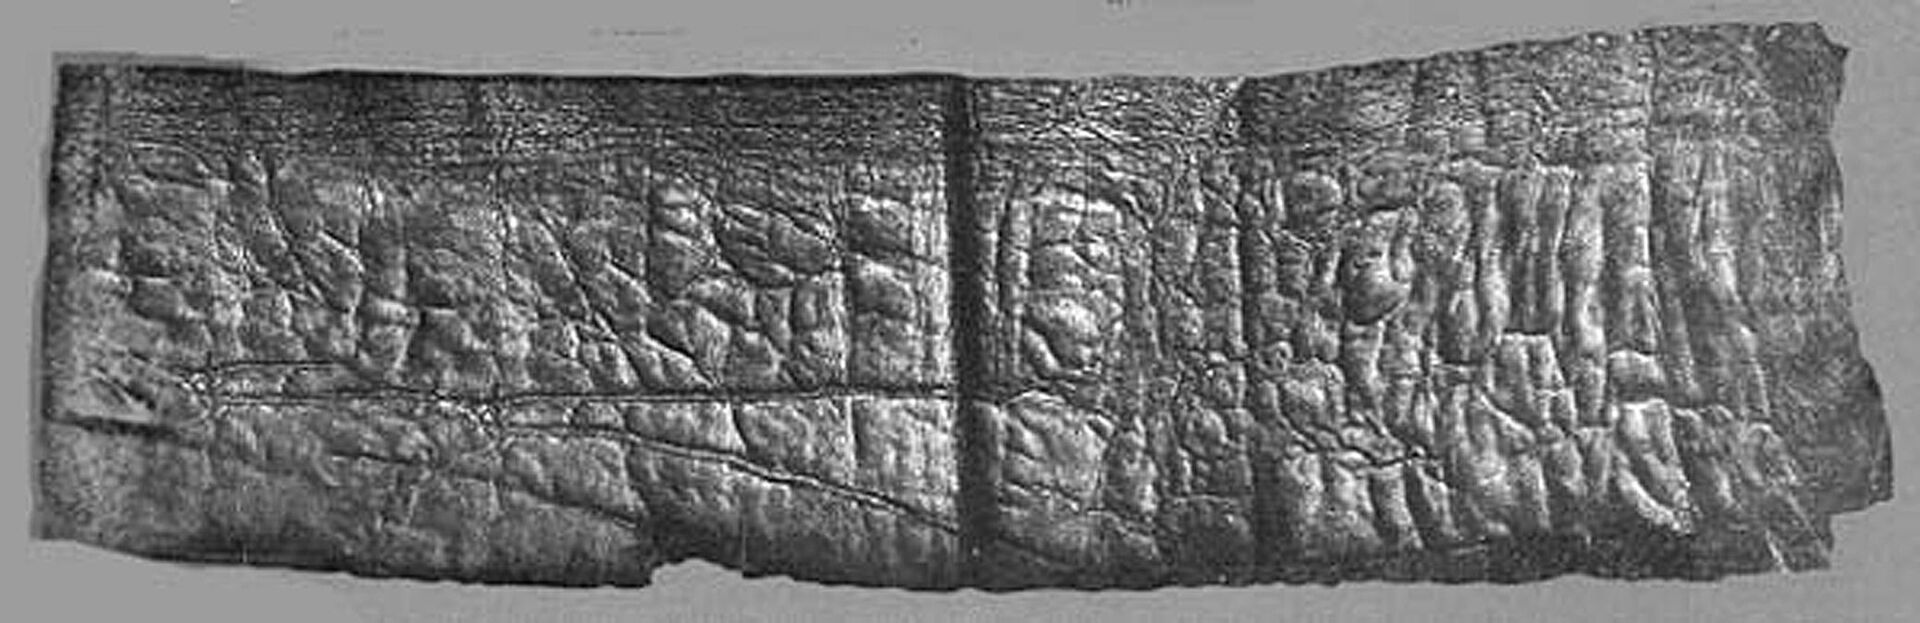 Pergaminho perdido antes considerado falso pode ser o mais antigo manuscrito bíblico da história - Sputnik Brasil, 1920, 11.03.2021